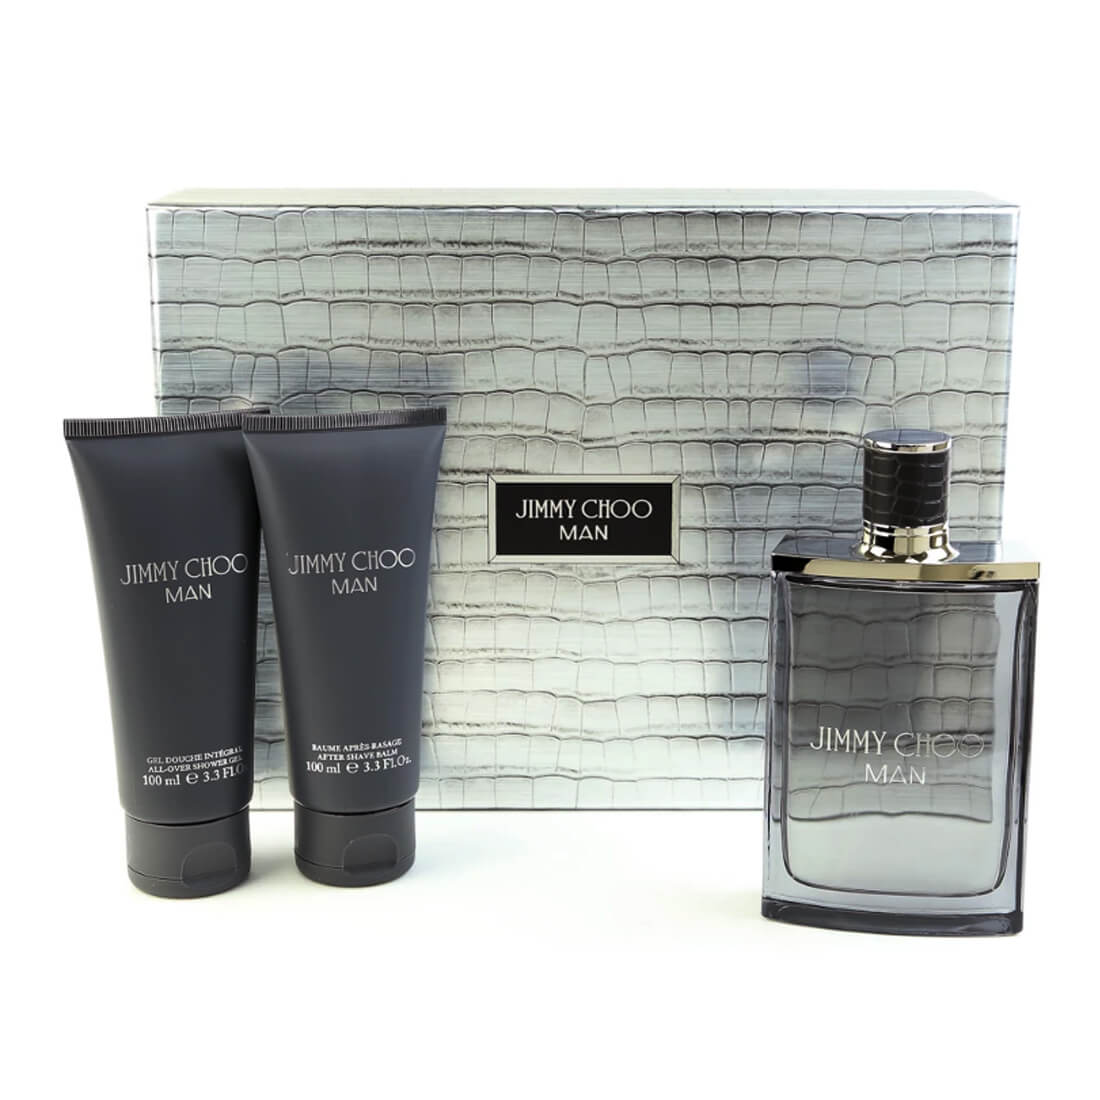 Buy Perfume Gift Set | Jimmy Choo Ice 